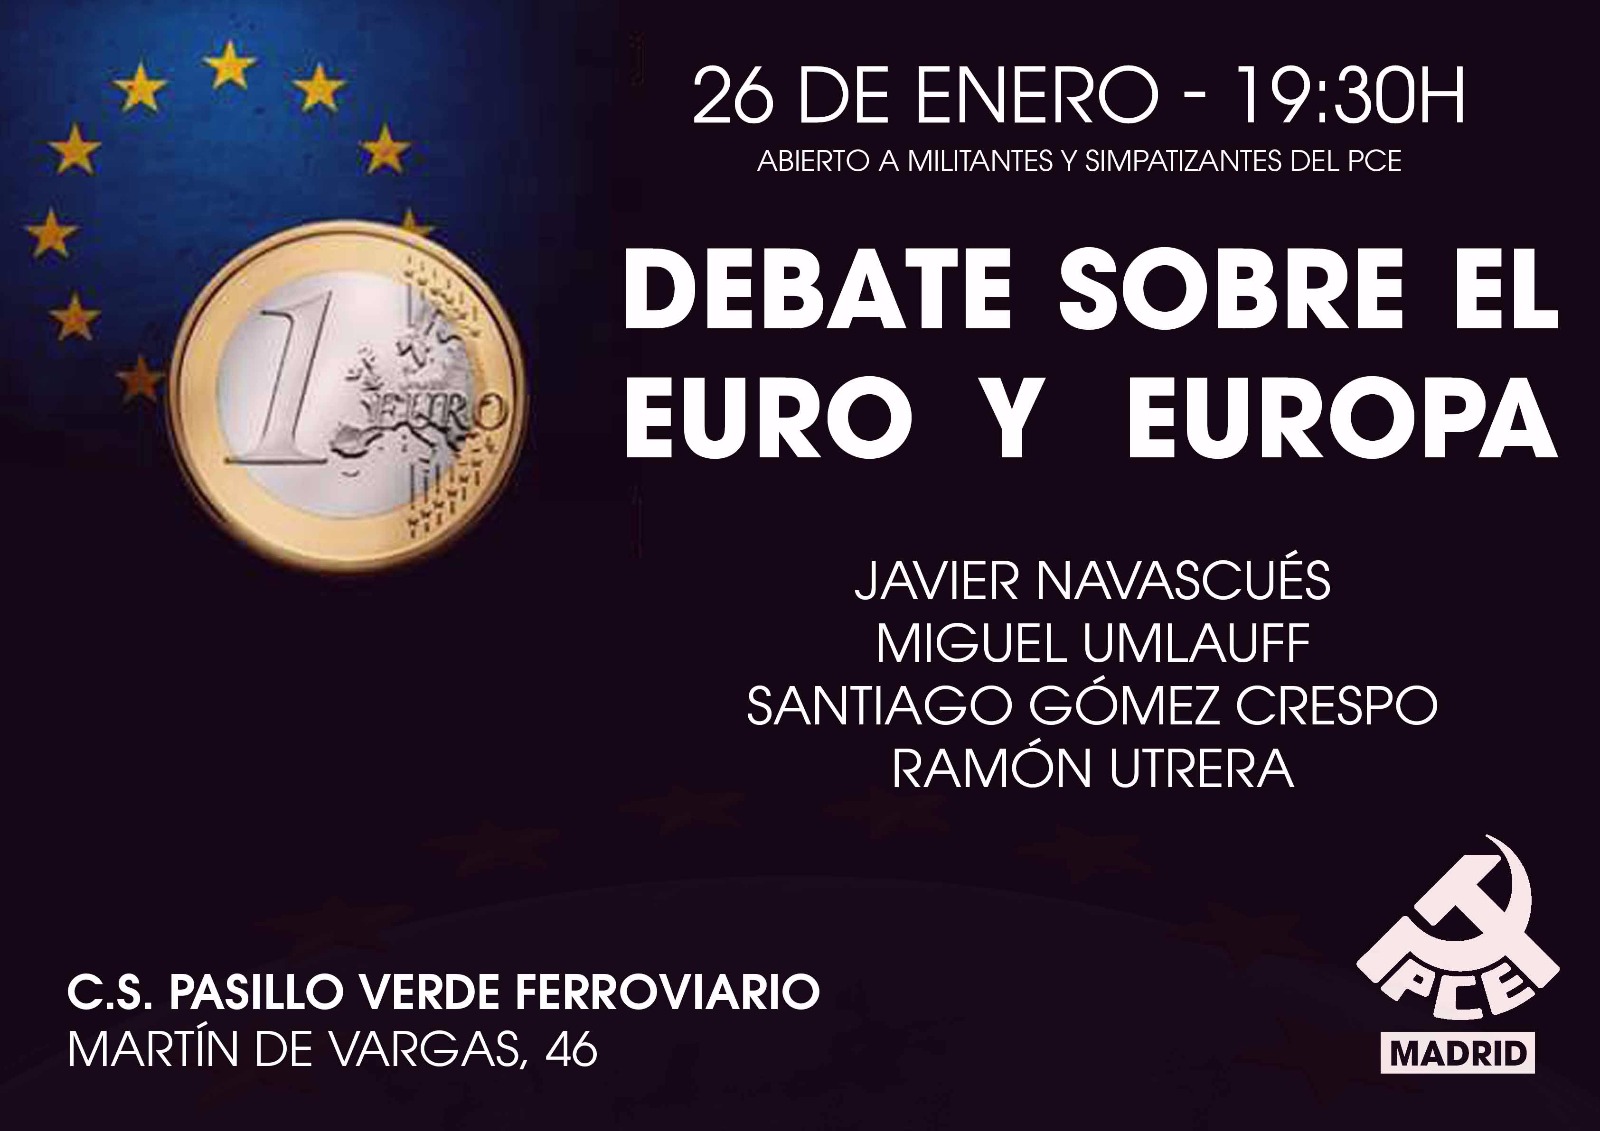 Debate sobre el euro y Europa (26 de enero a las 19:30)